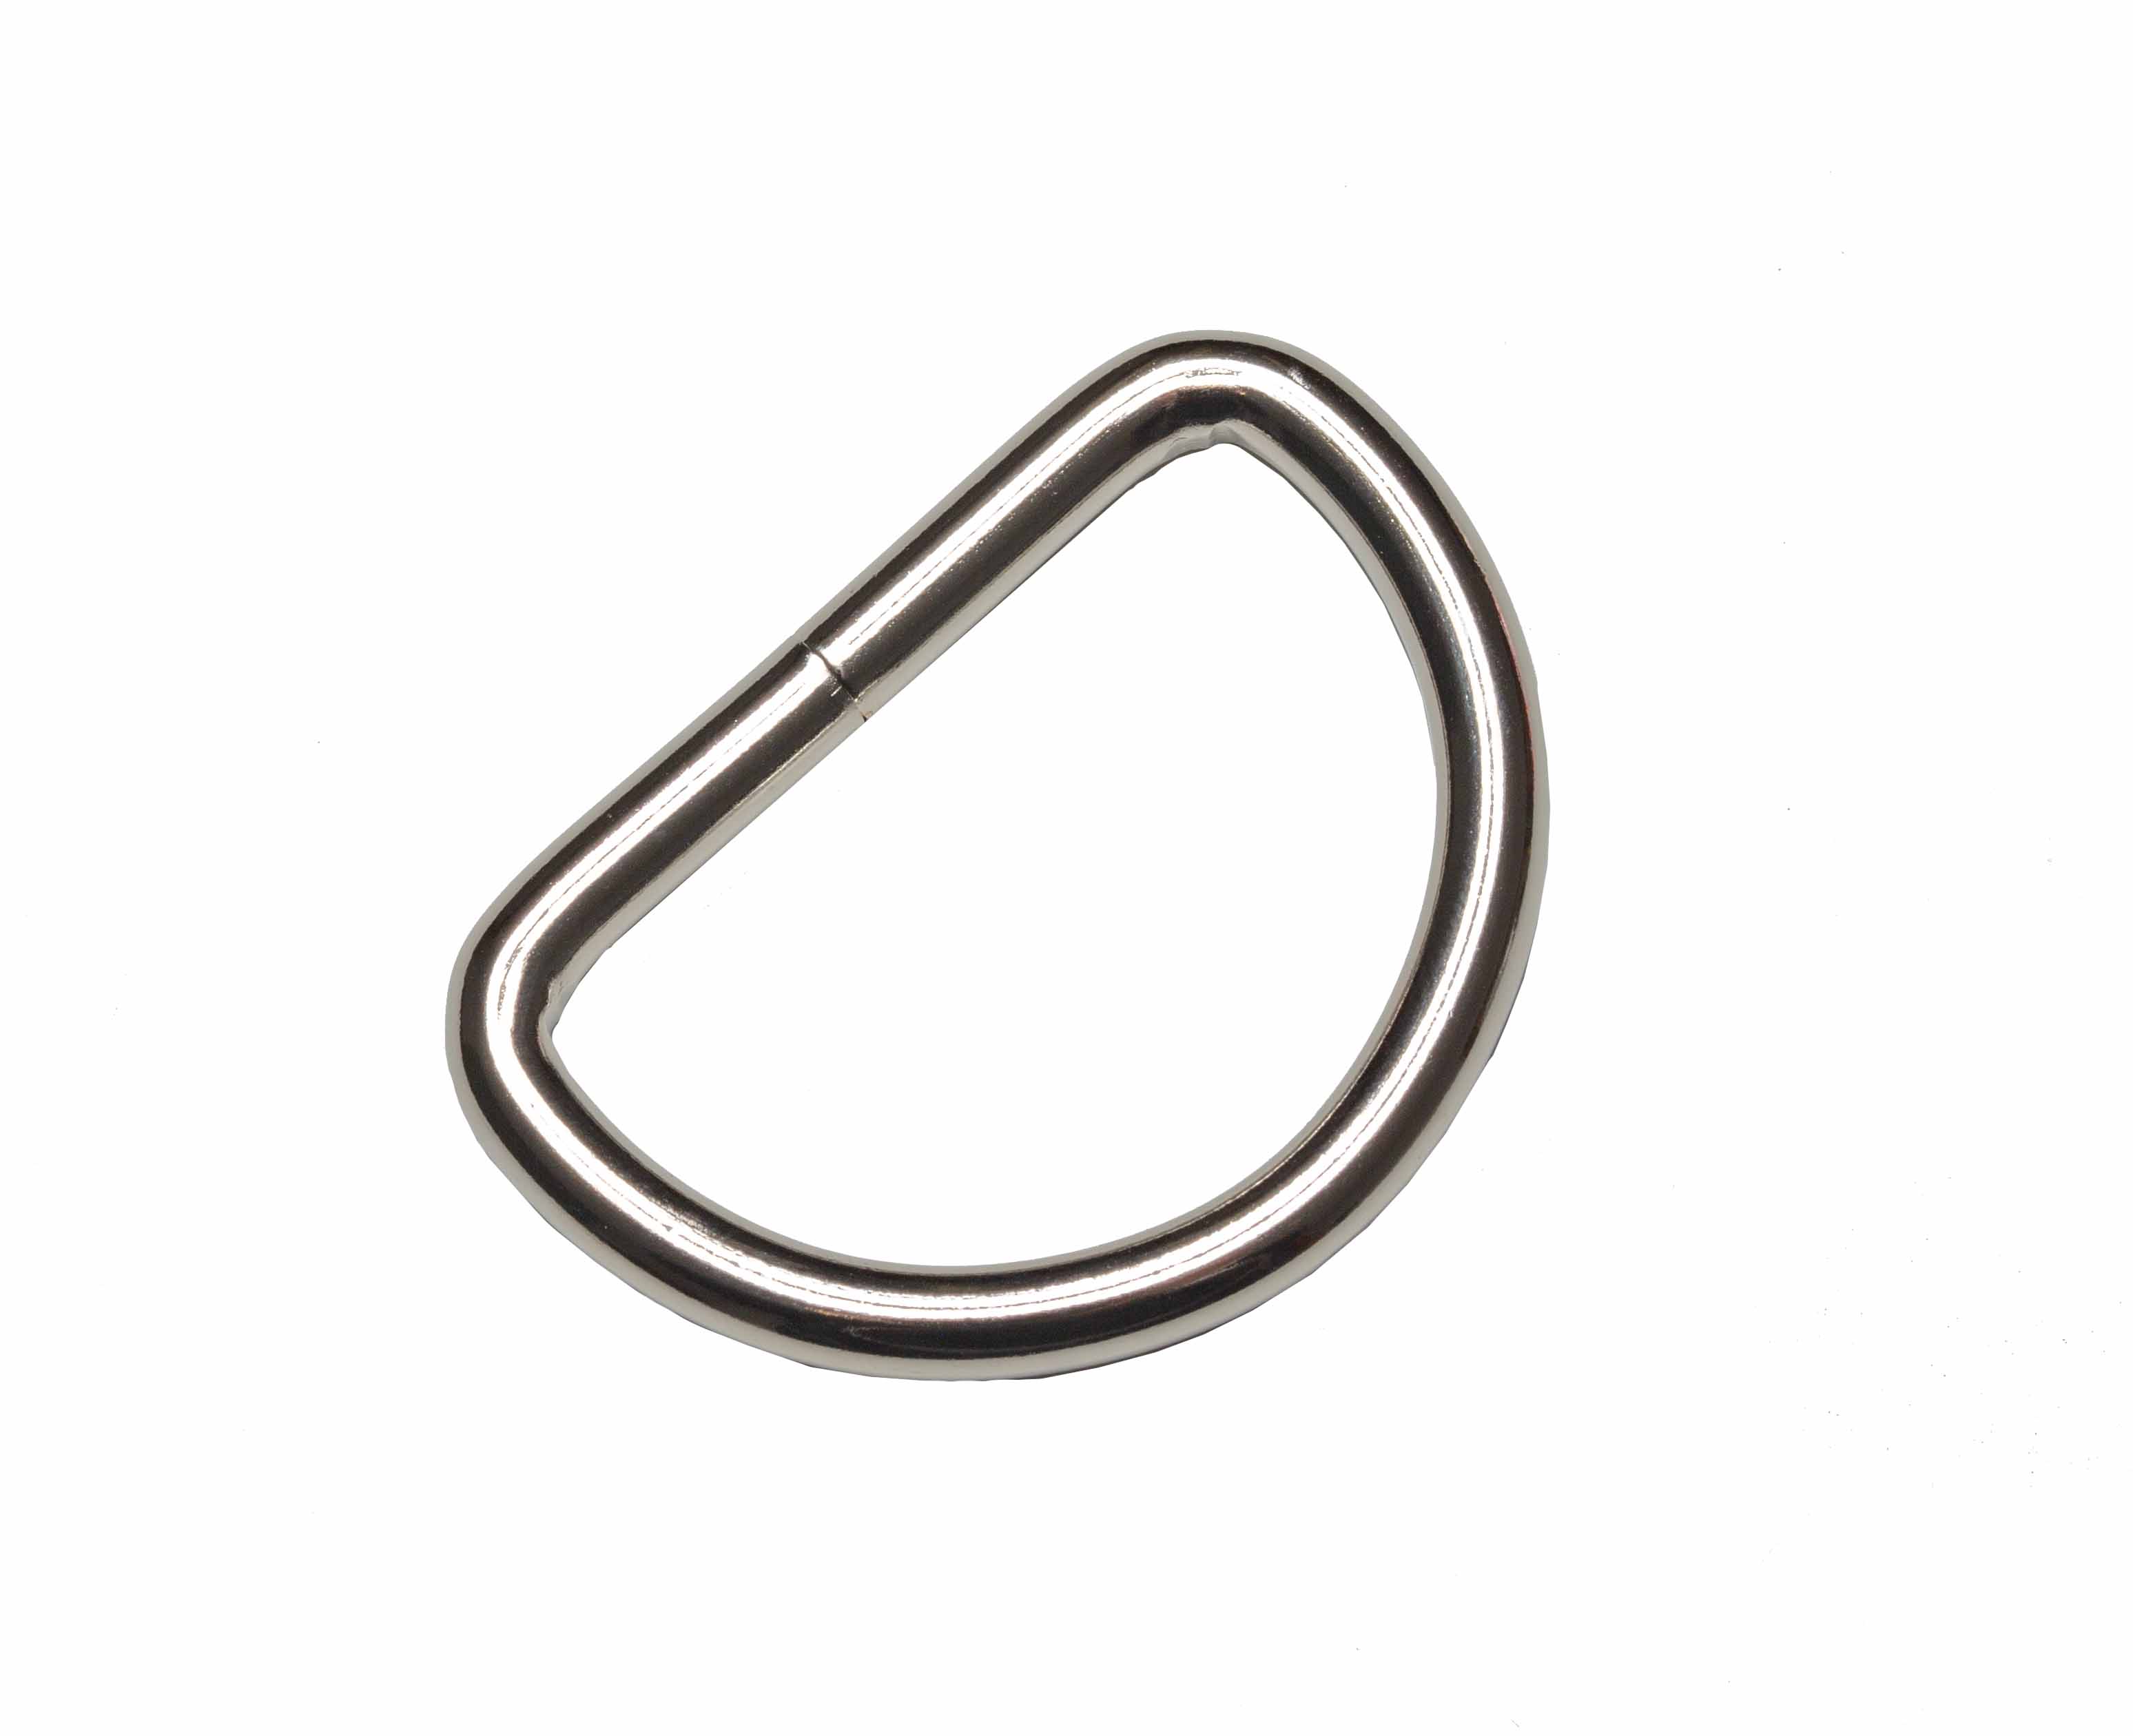 Metall-Halbring, 25 mm, silber, 2 Stück D-Ring